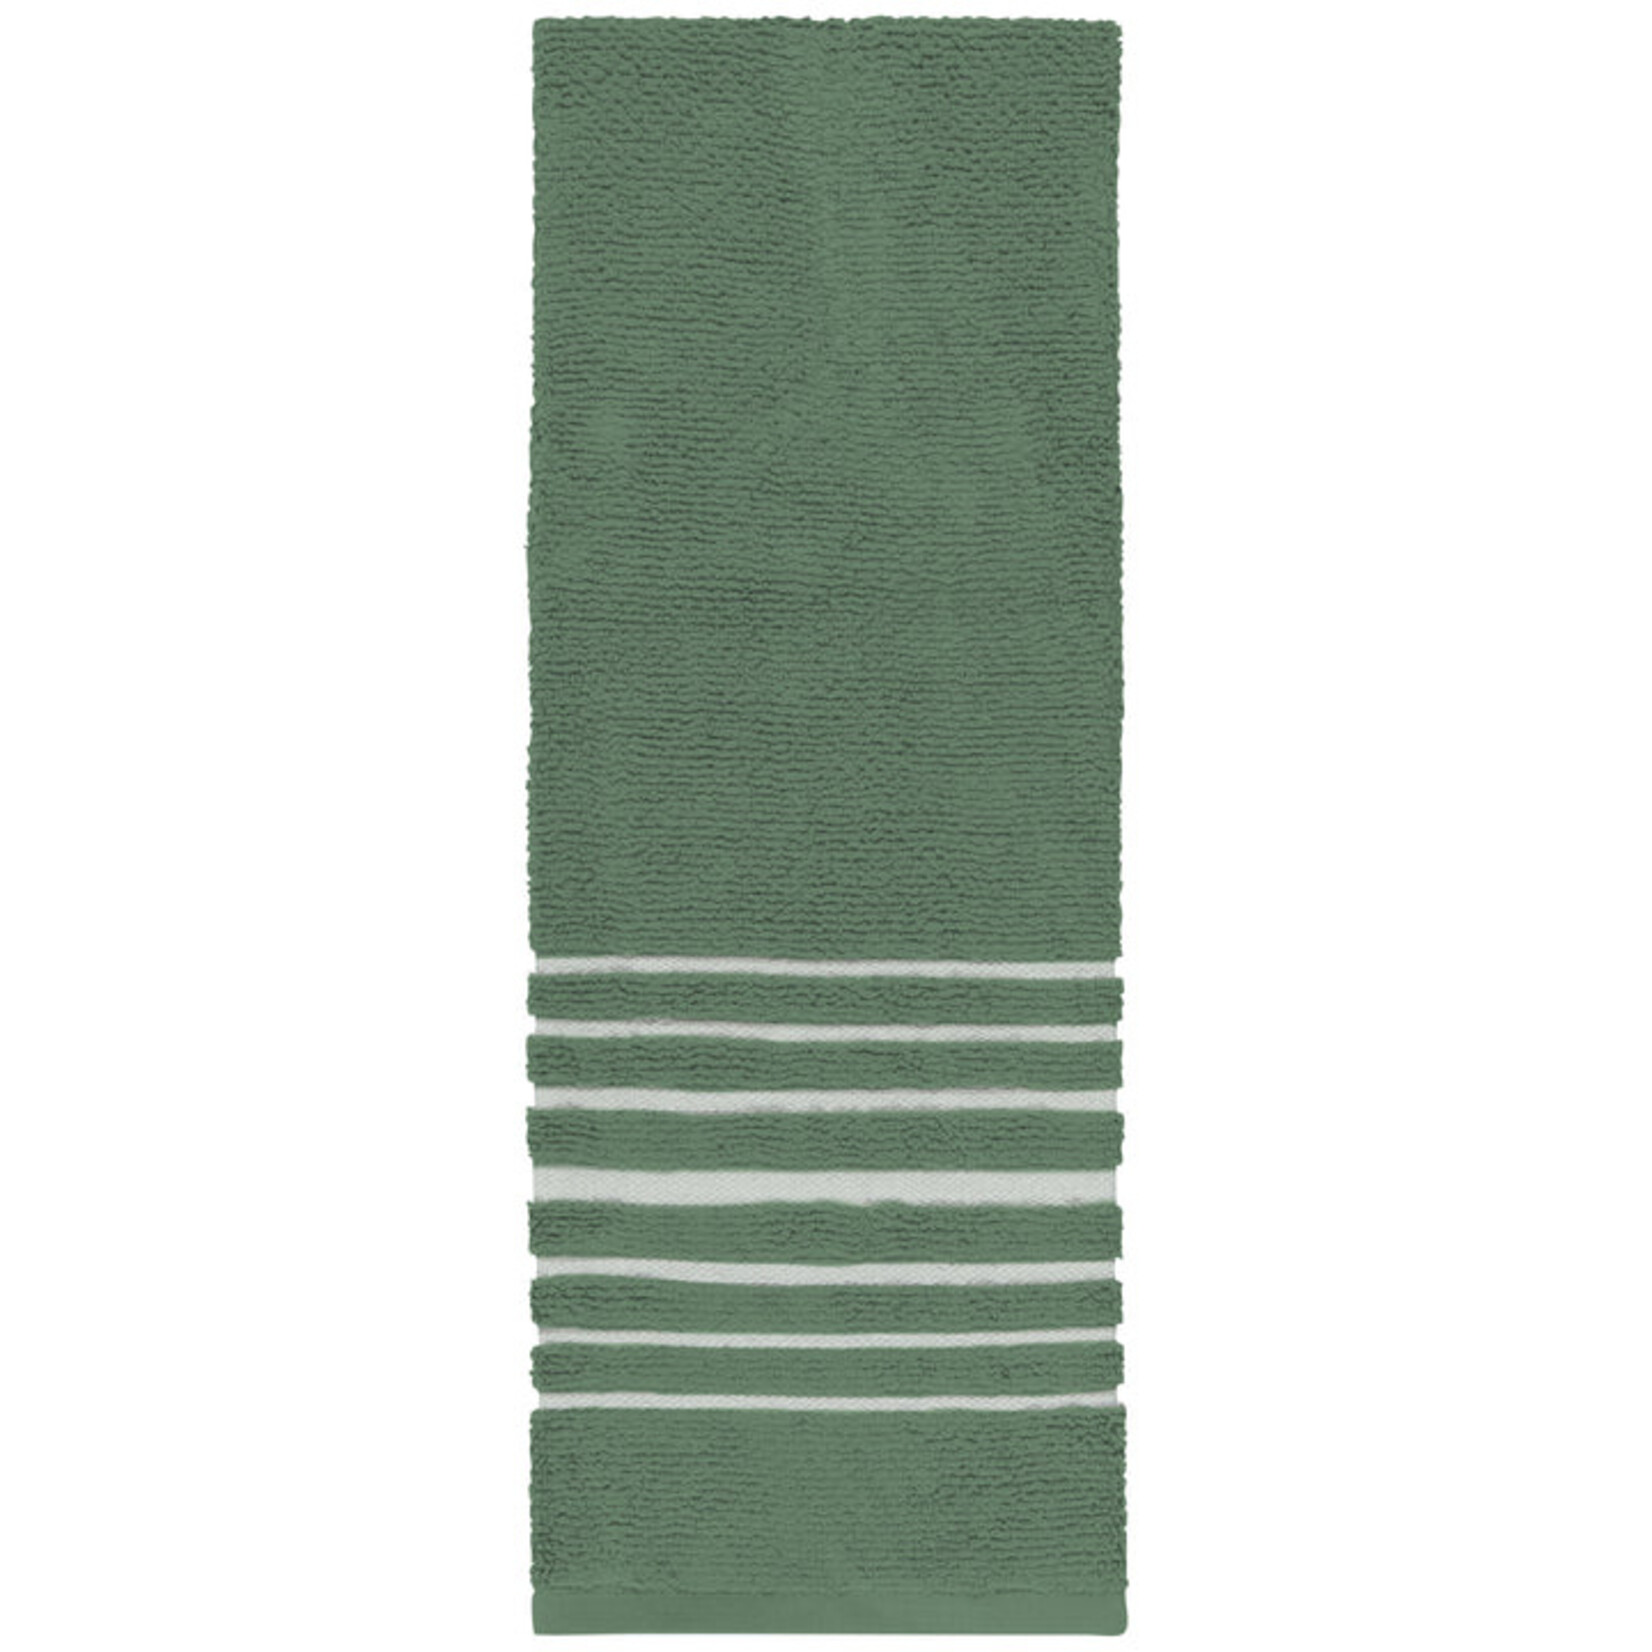 Danica Elm Green Hang up Tea Towel